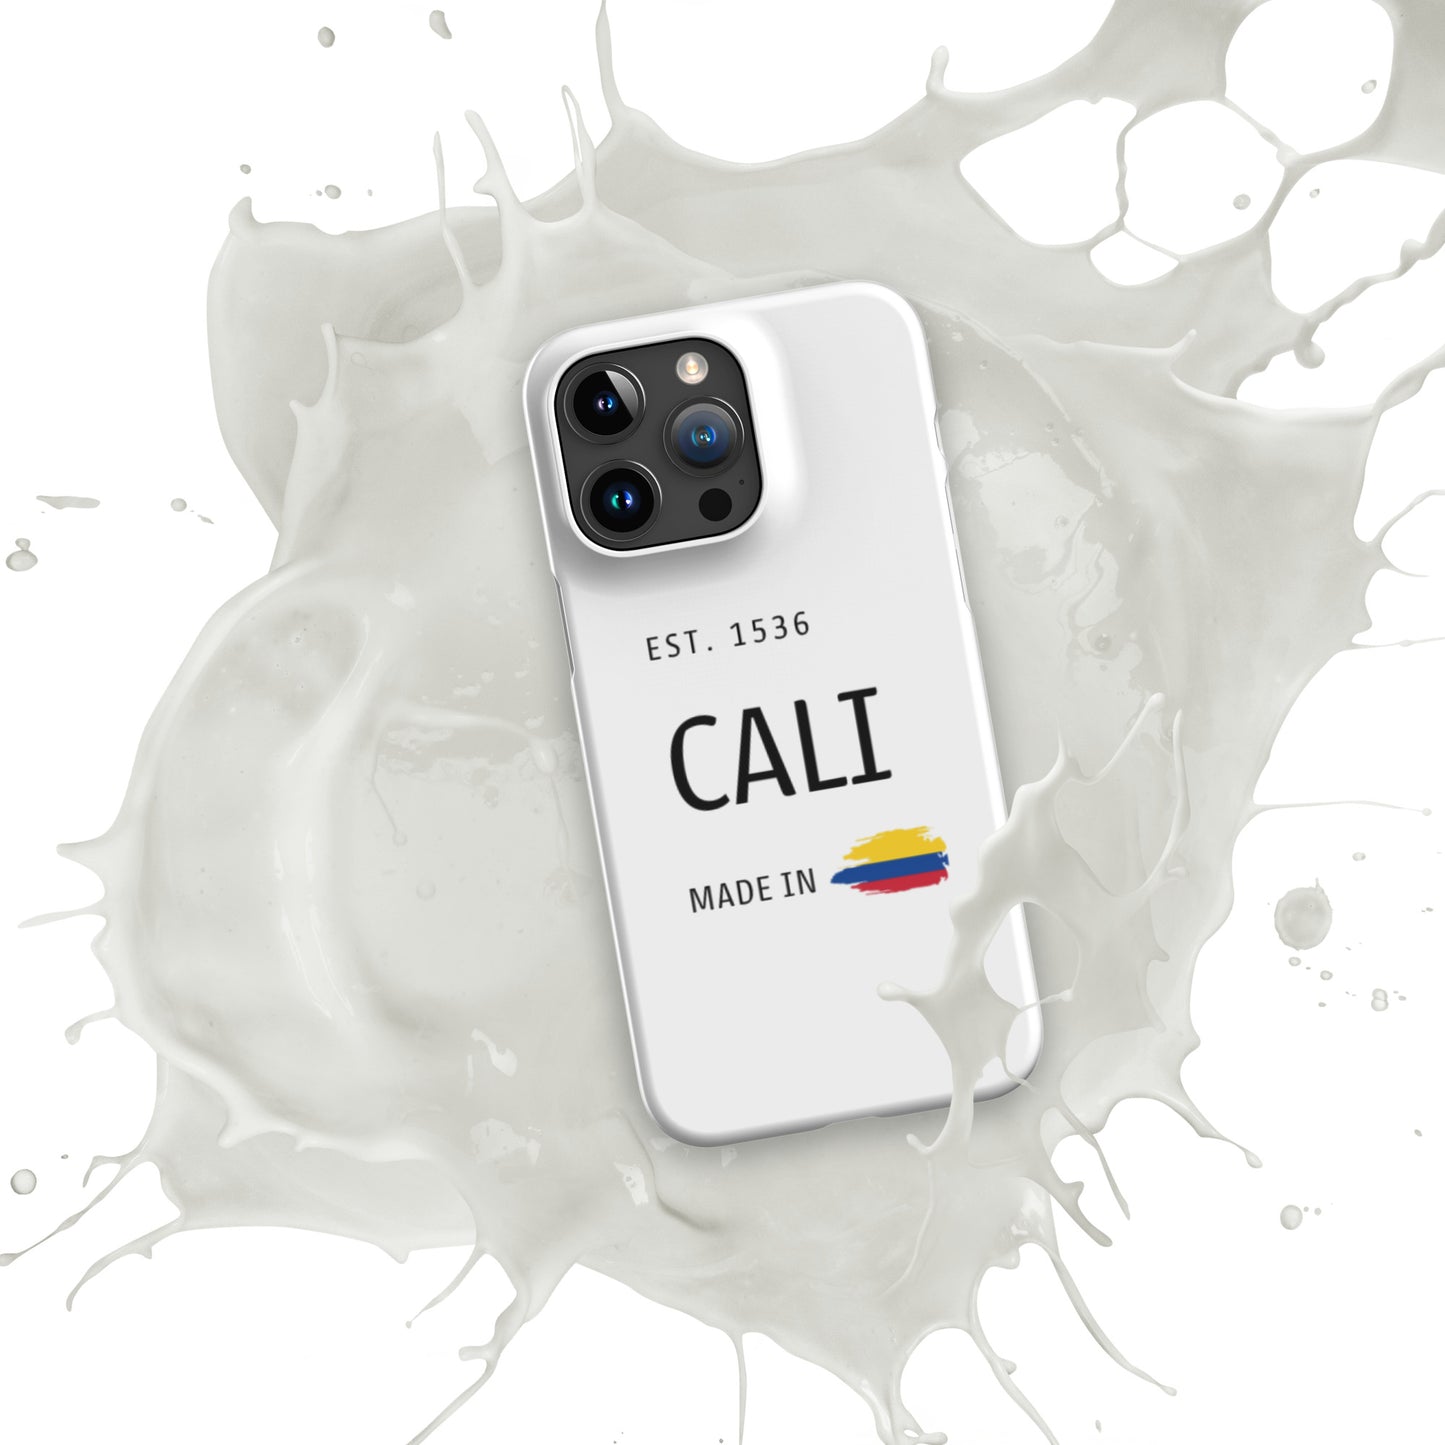 Made in Cali iPhone Case